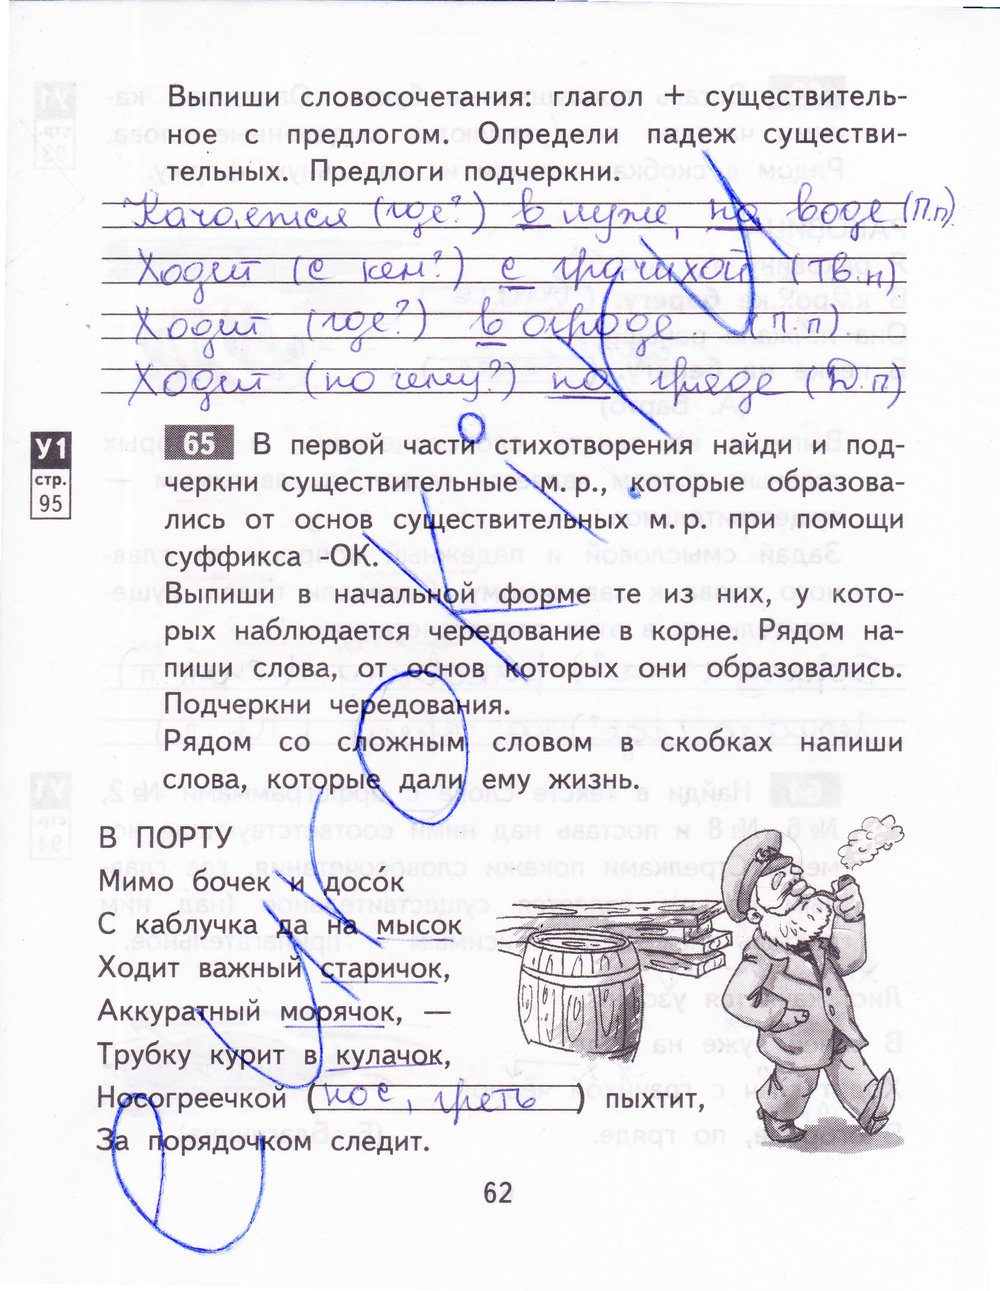 Русский страница 62 номер три